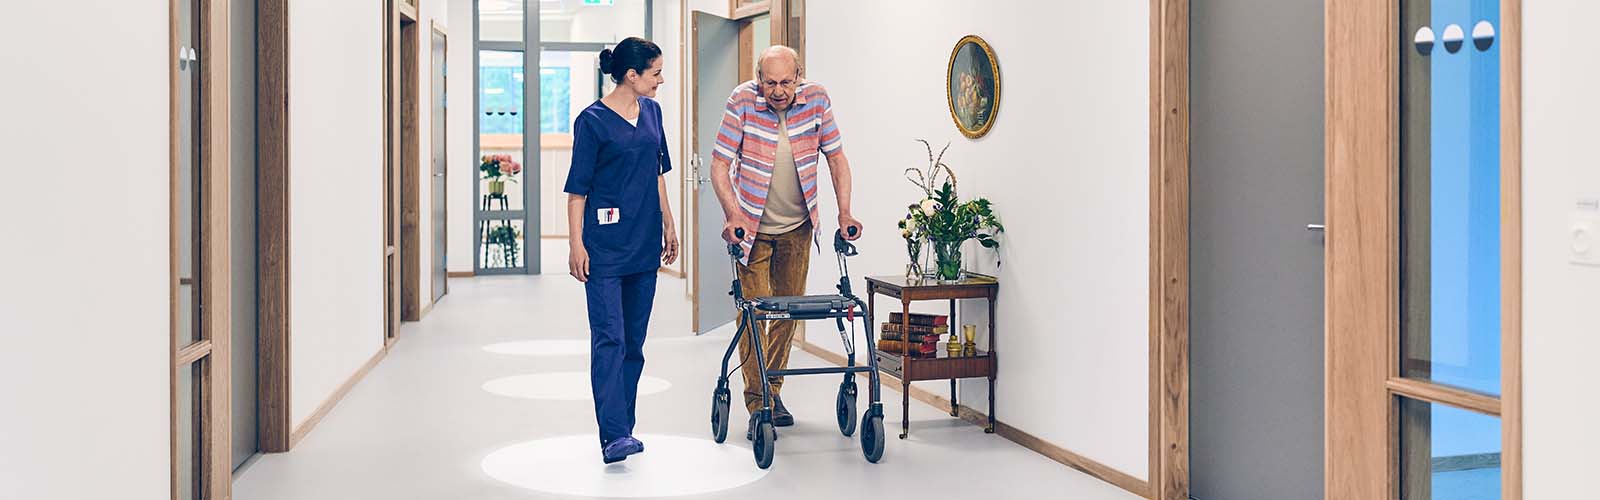 Una caregiver professionale e un anziano residente con un ausilio per la mobilità camminano lungo un corridoio in una casa di riposo 